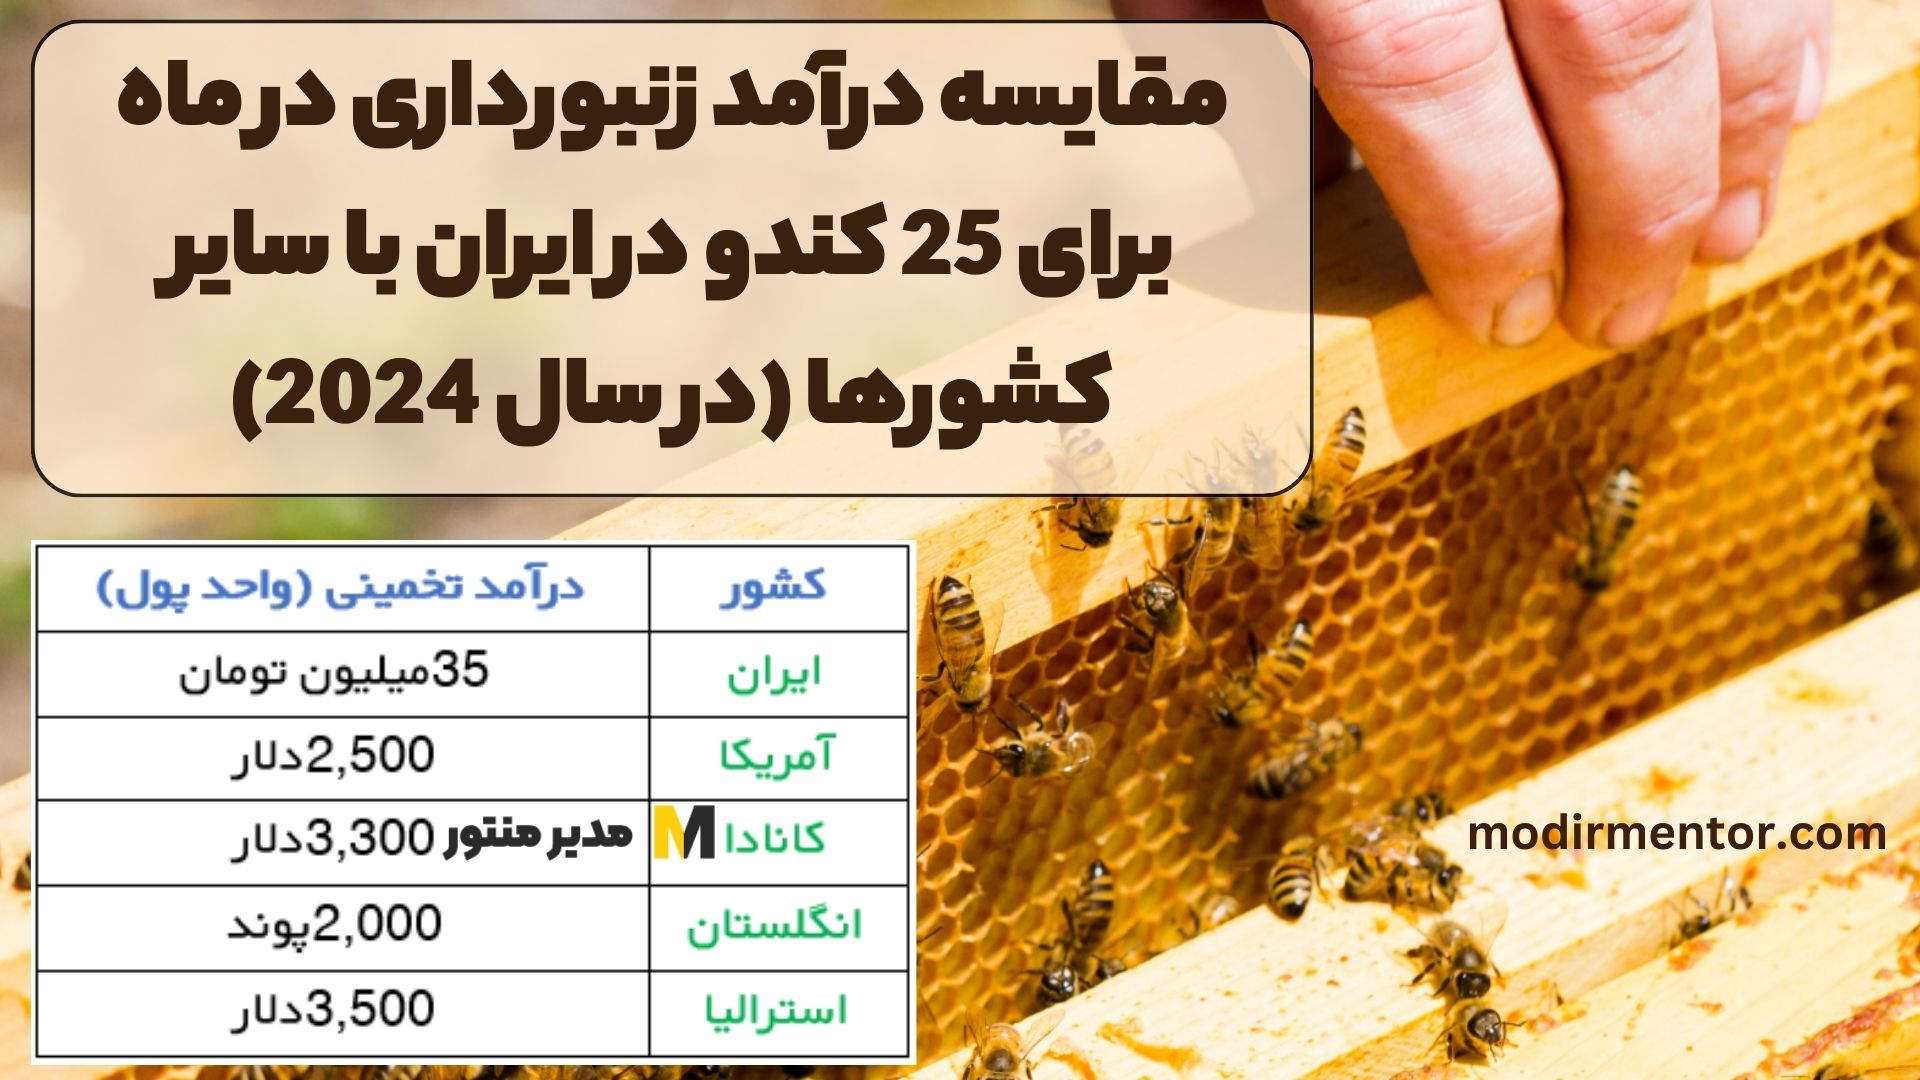 مقایسه درآمد زنبورداری در ماه برای 25 کندو در ایران با سایر کشورها (در سال 2024)